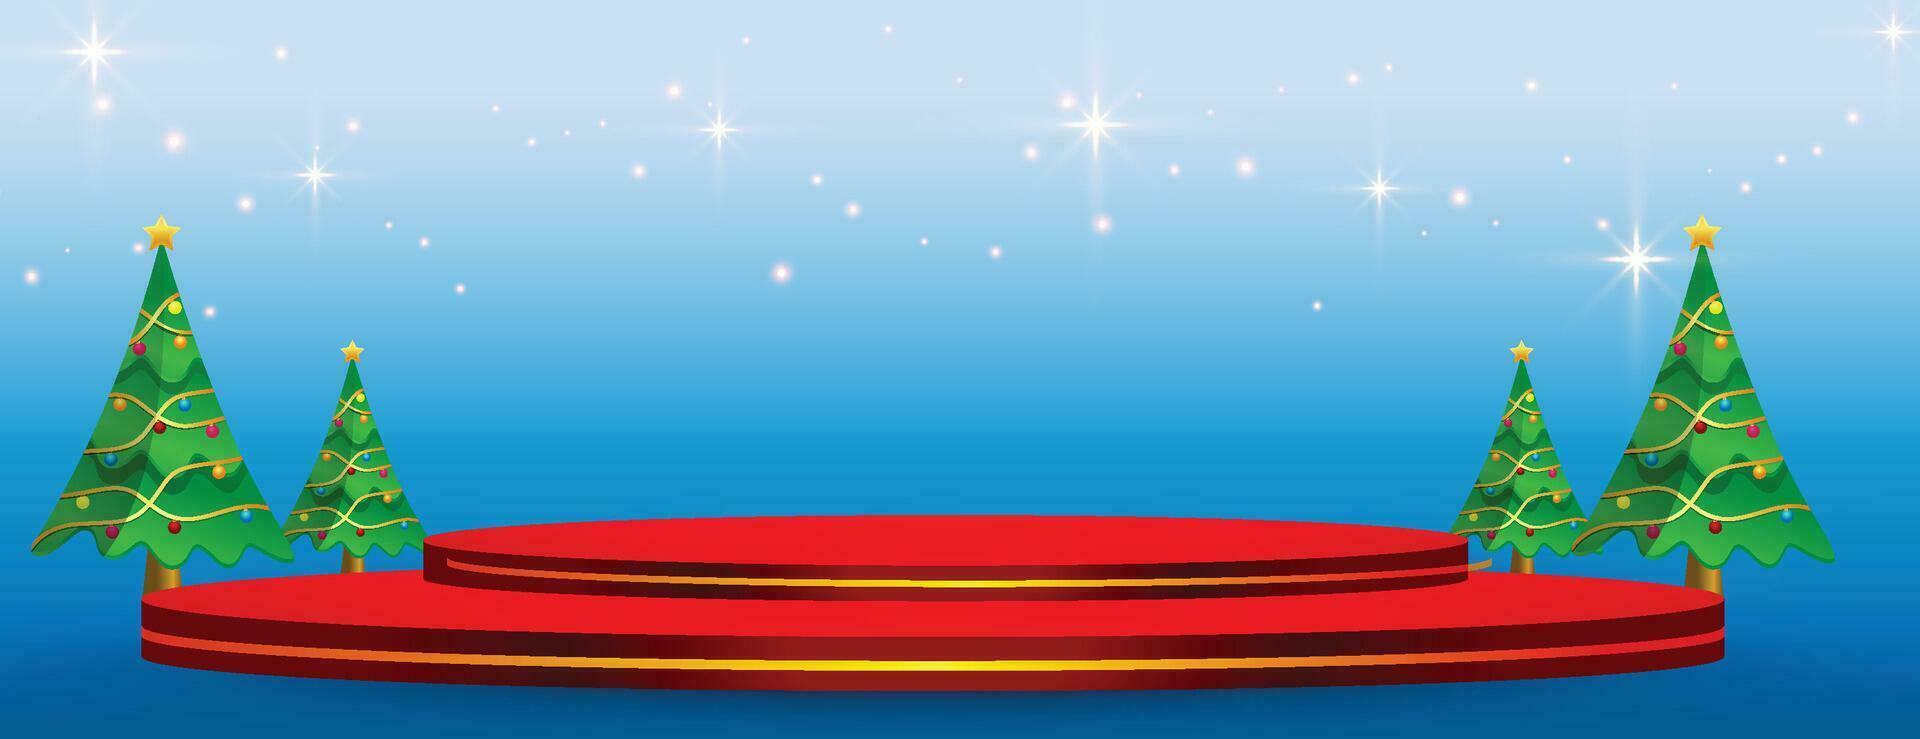 merry christmas banner med produkt display cylindrisk form och julgran papper cut stil vektor